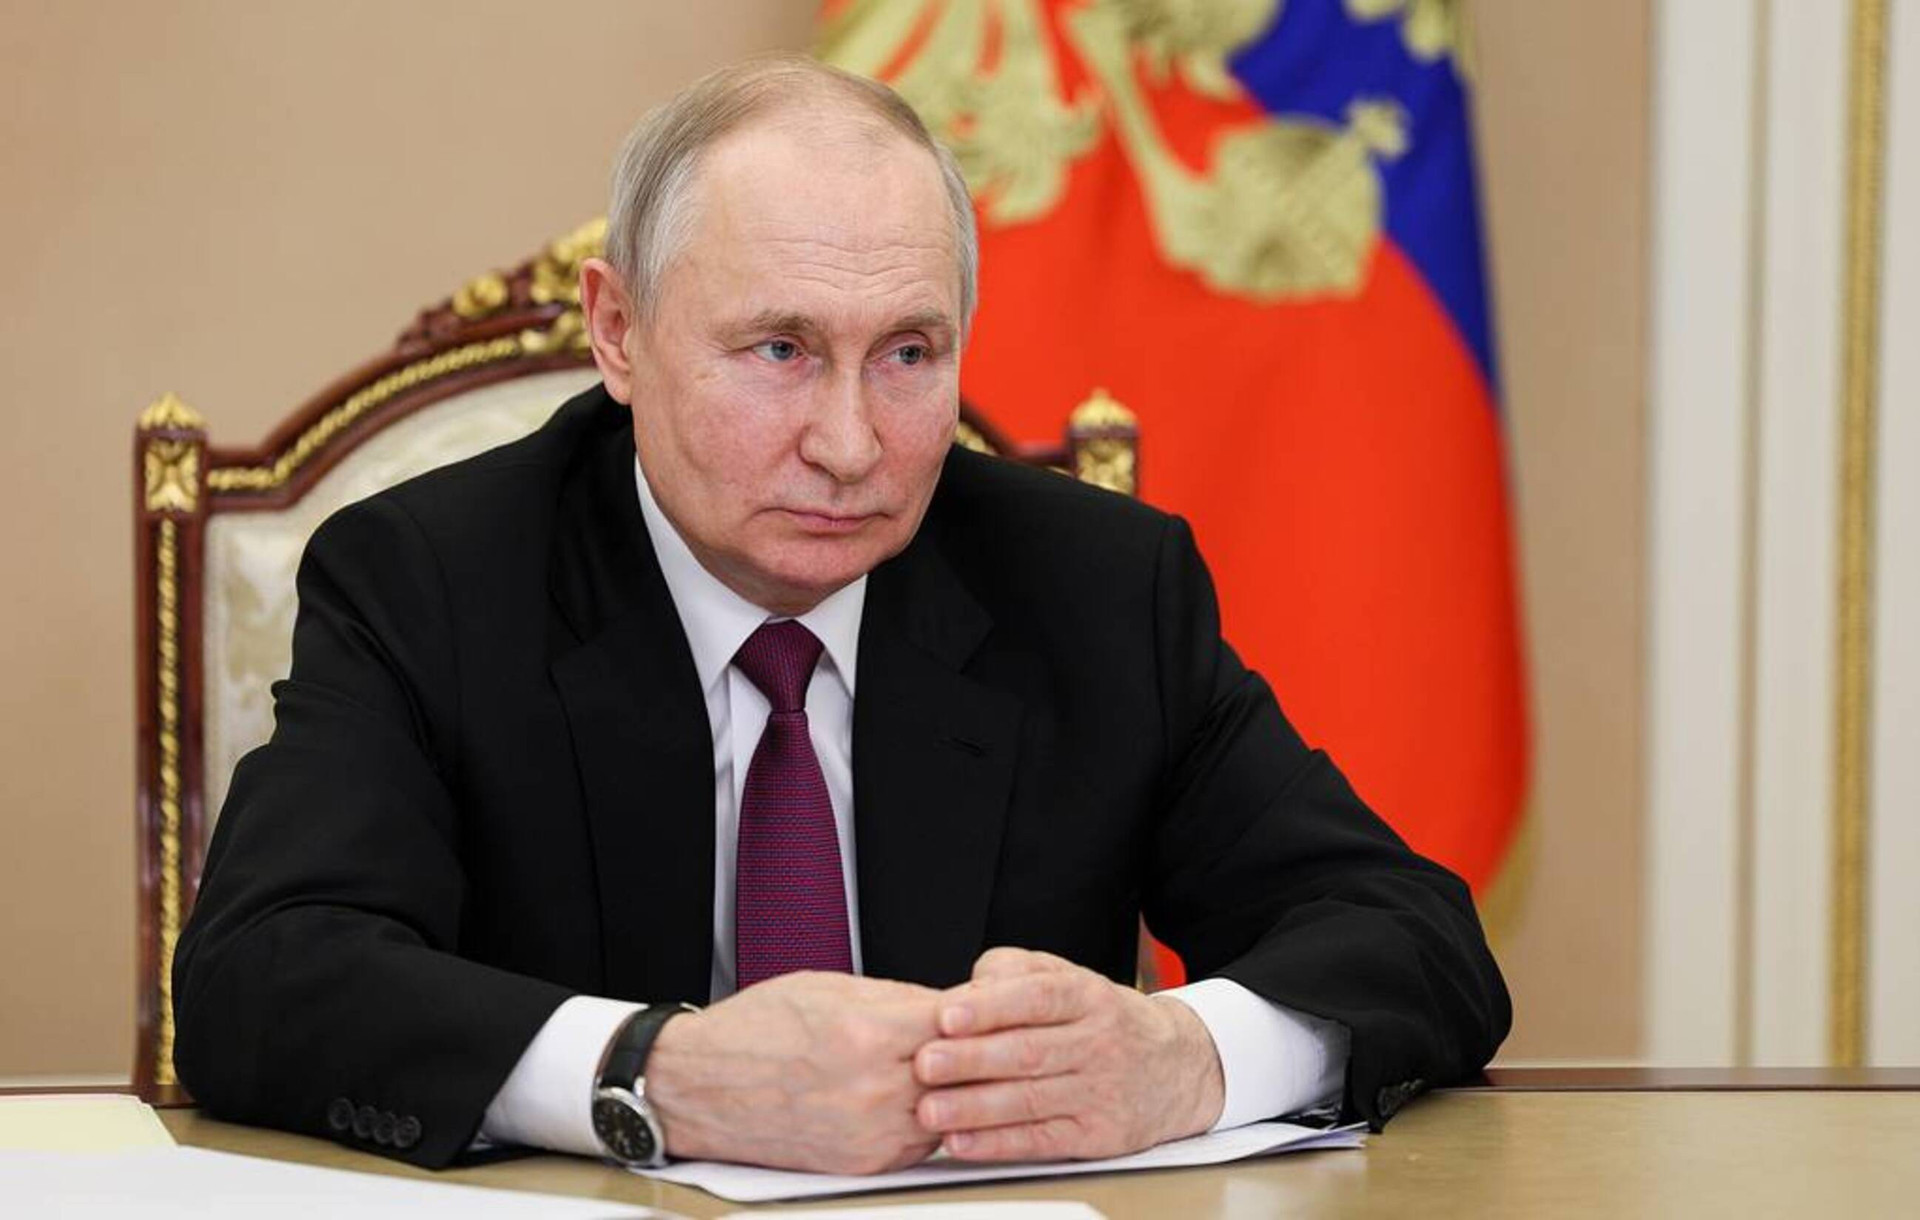 Ông Putin tuyên bố Nga sẽ đảm bảo an ninh cho tất cả các quốc gia - 1